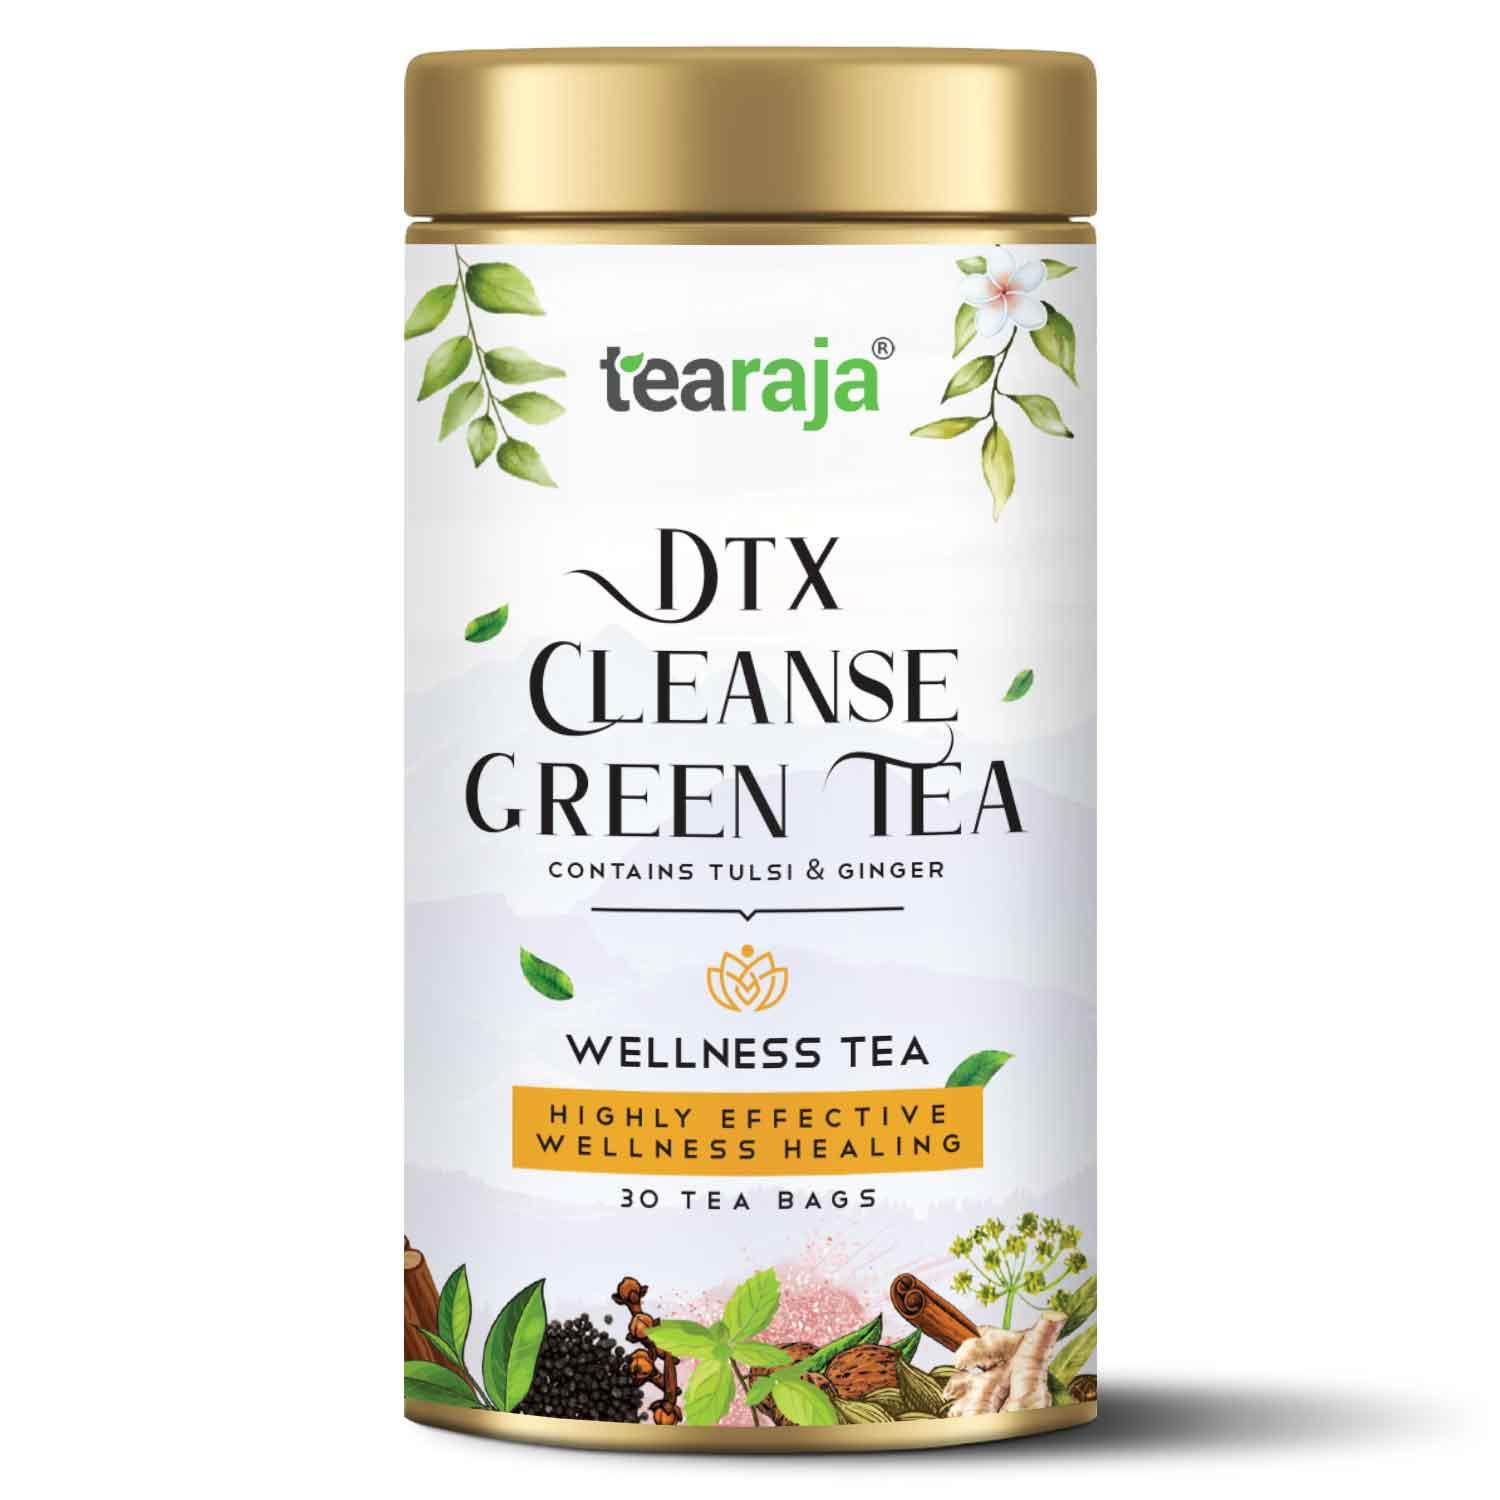 Dtx Cleanse Green Tea 30 Tea Bags - Tearaja